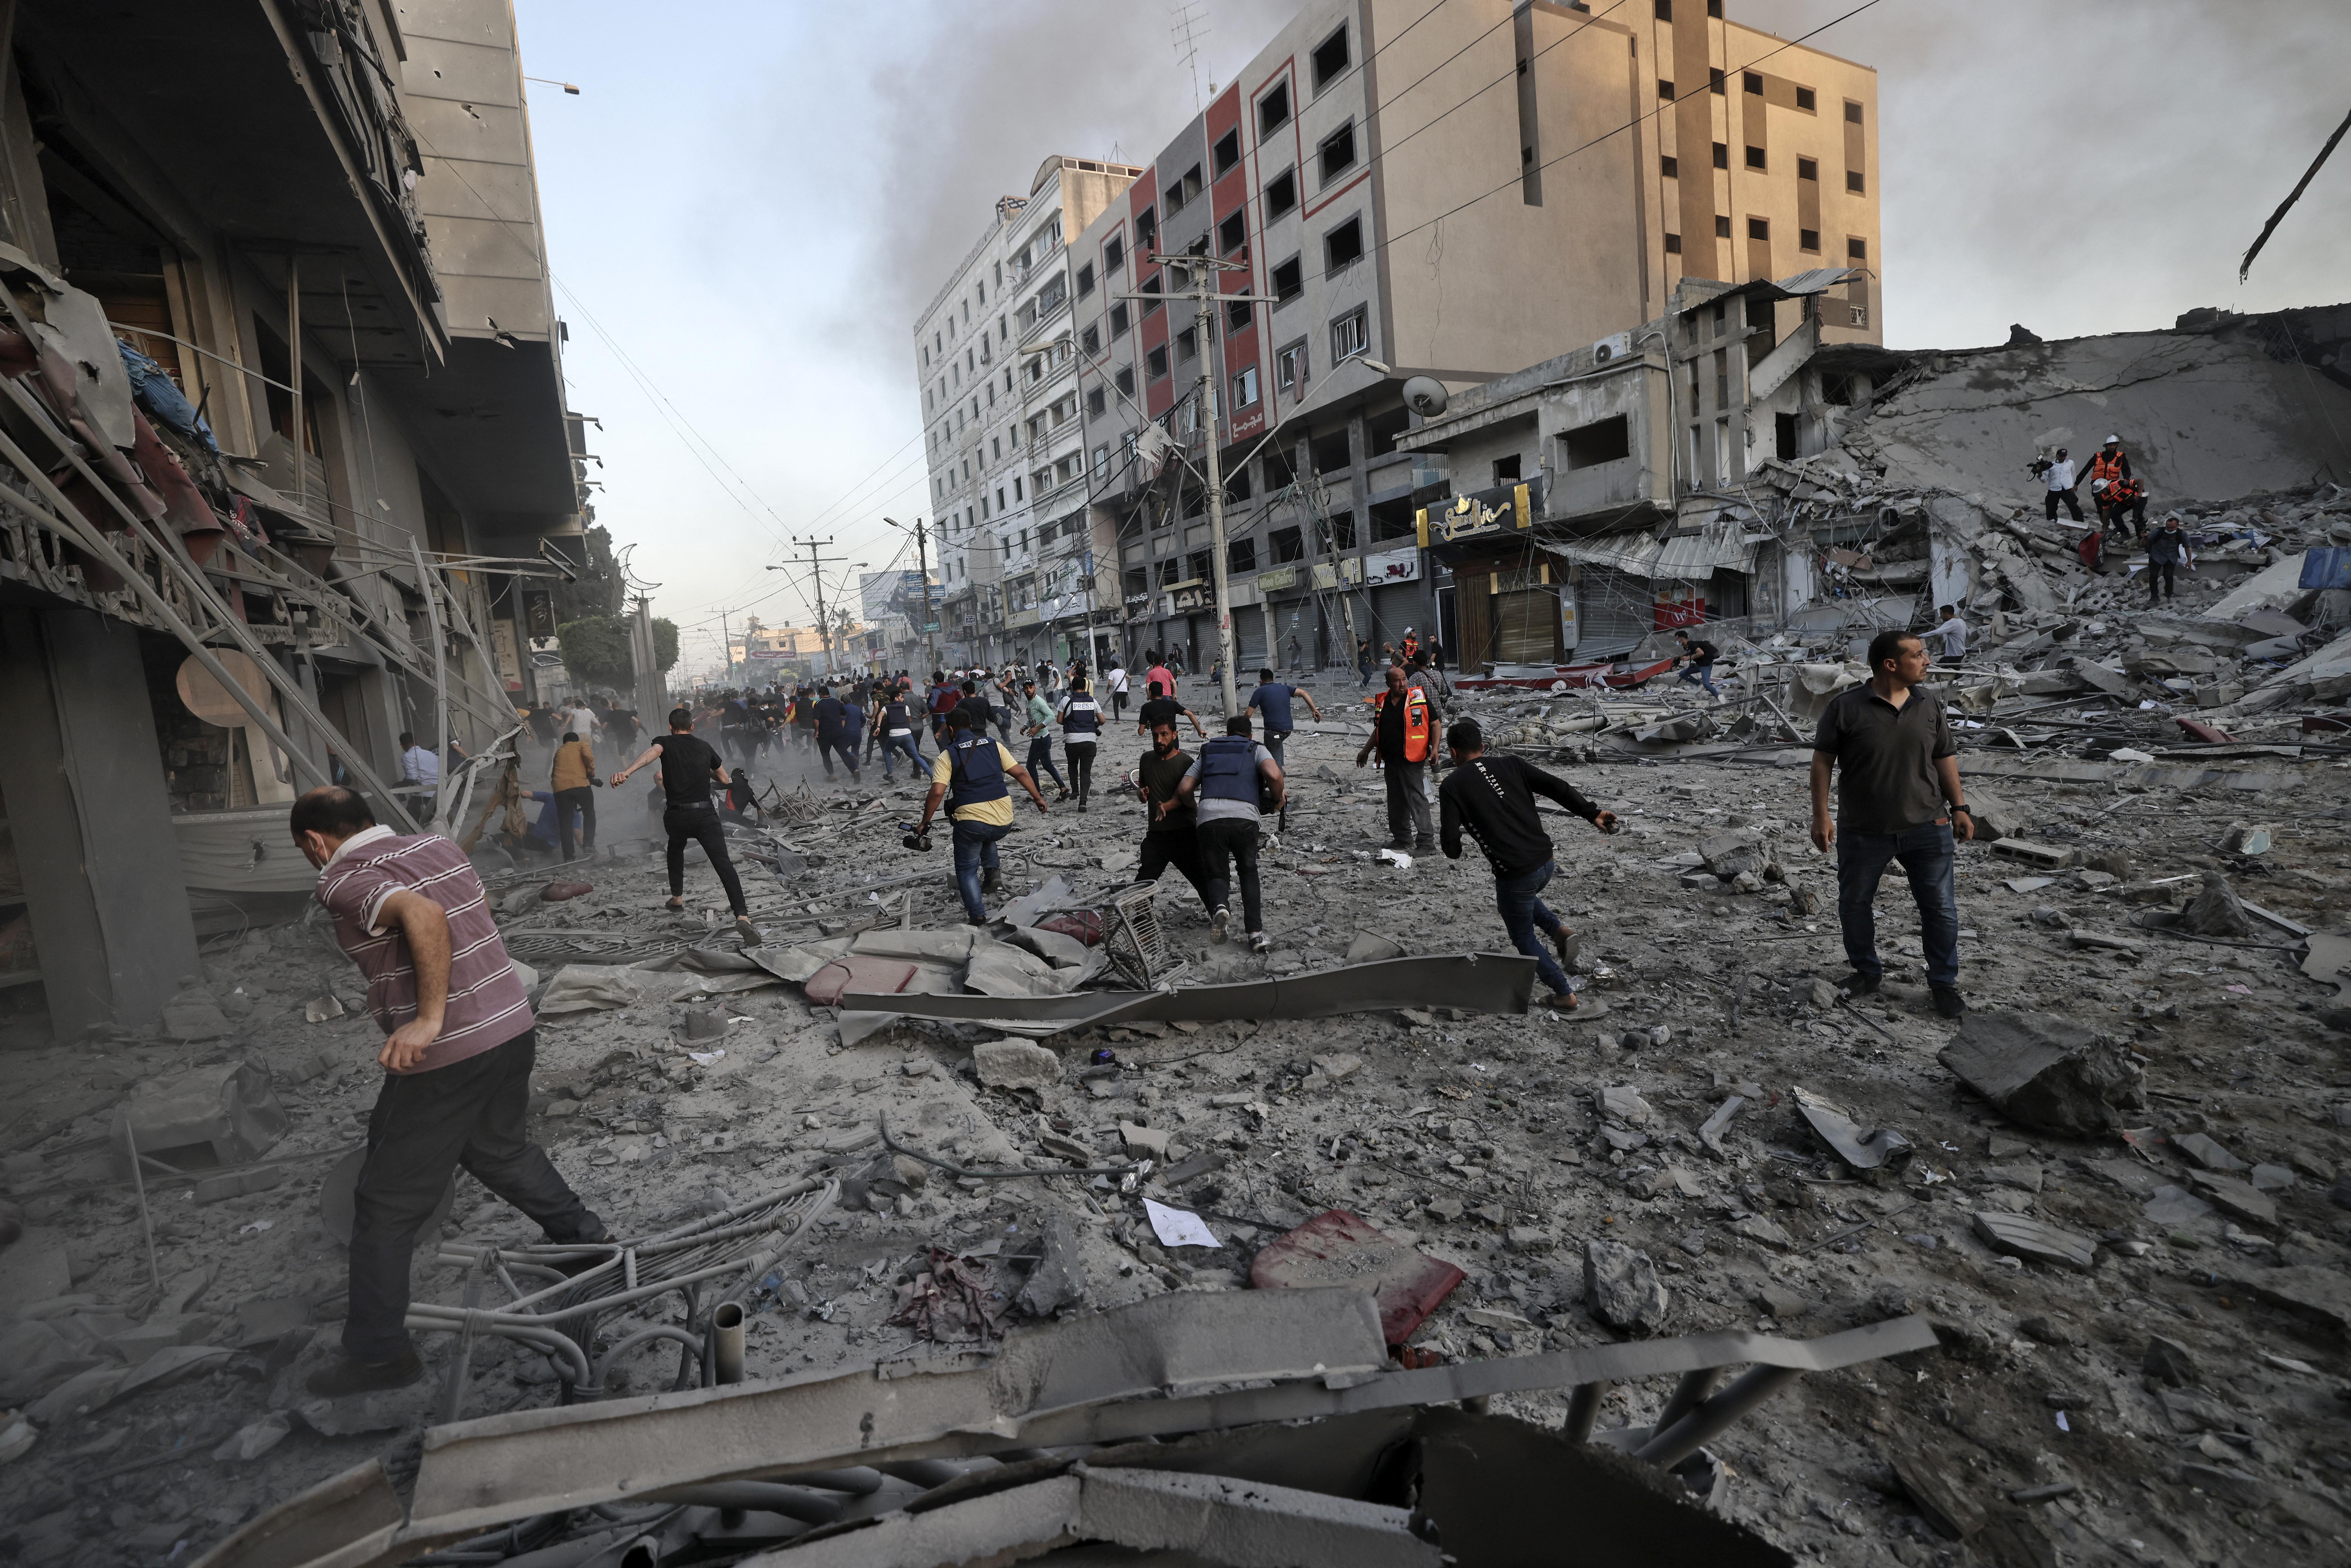 Bombing in Gaza, Palestine